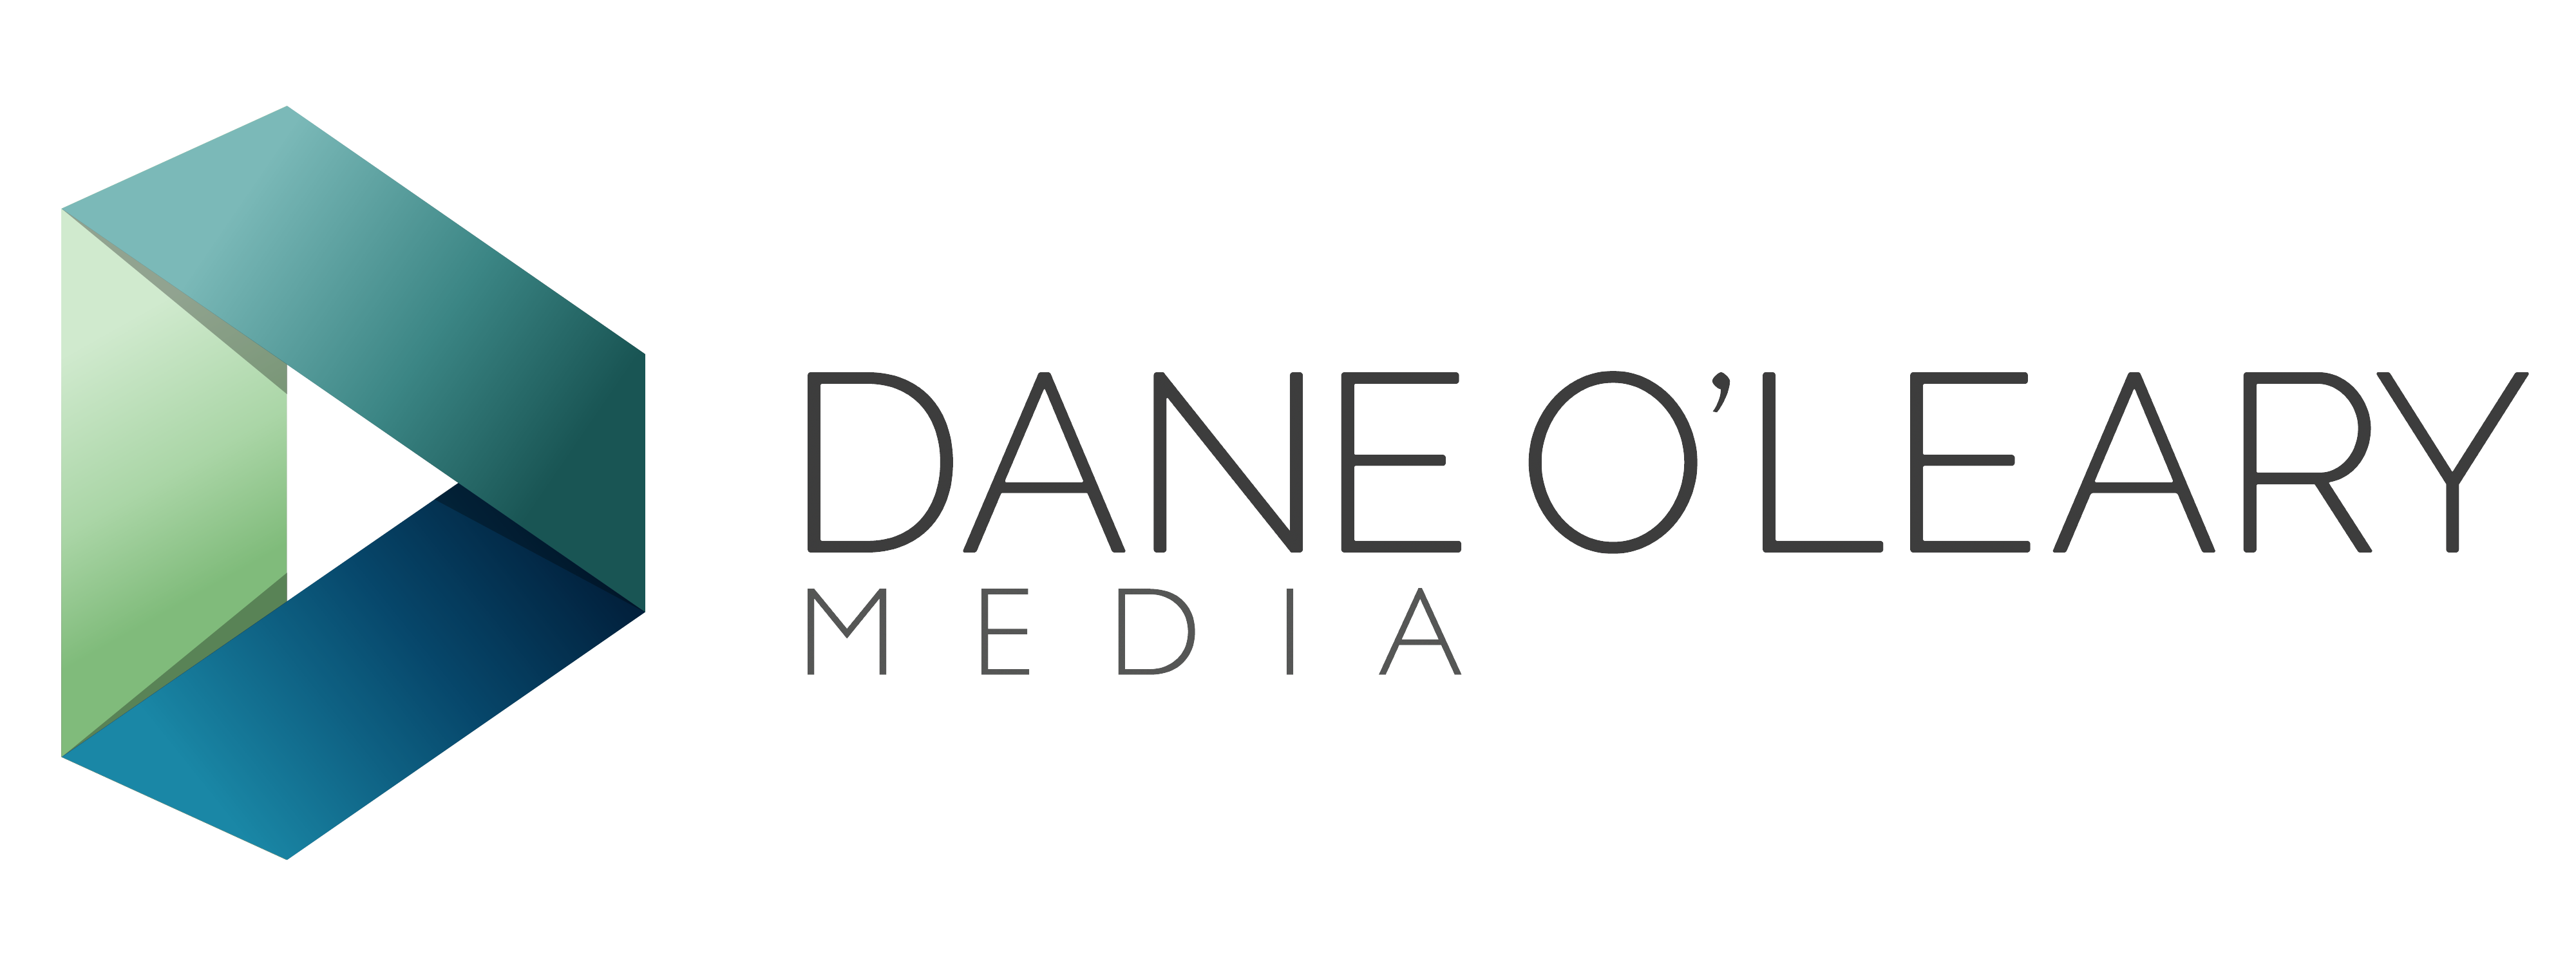 Dane O'Leary Media